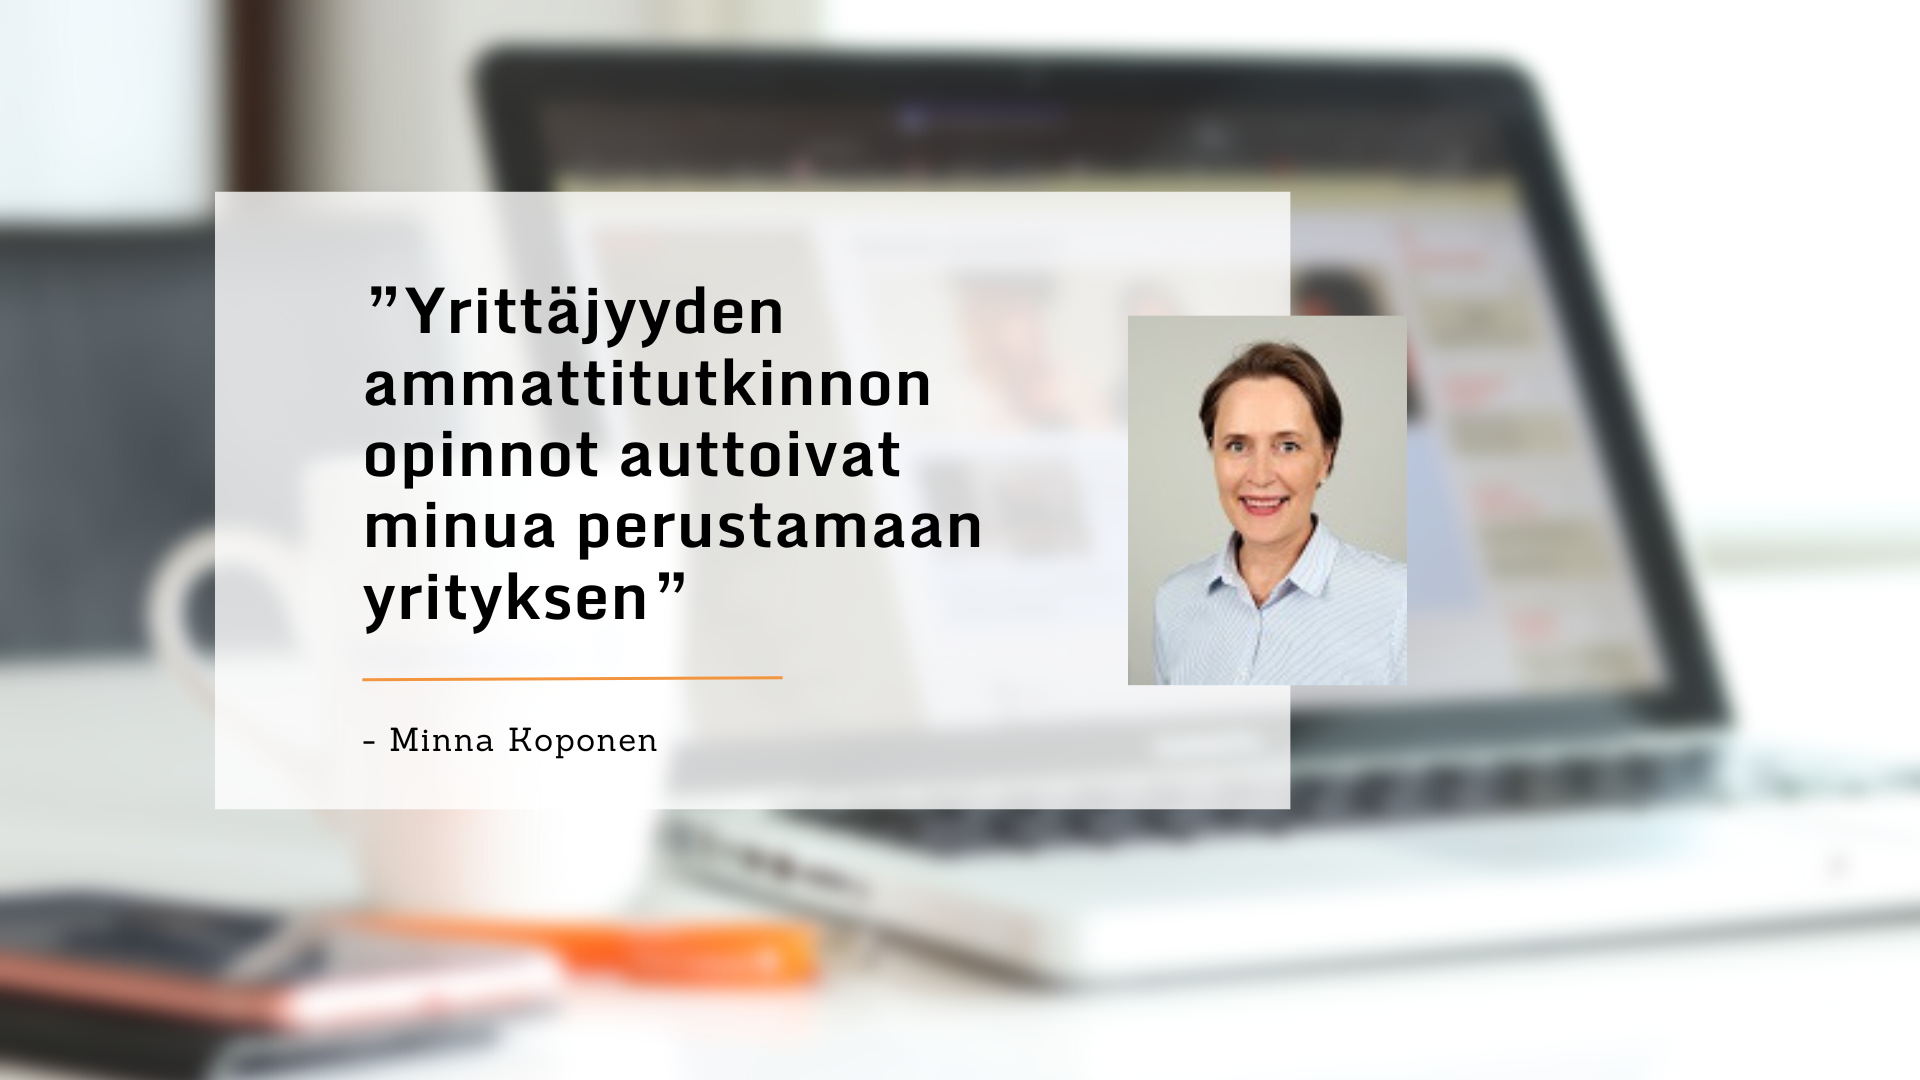 Yrittäjyyden ammattitutkinnon opinnot auttoivat minua perustamaan yrityksen, kertoo Minna Koponen.